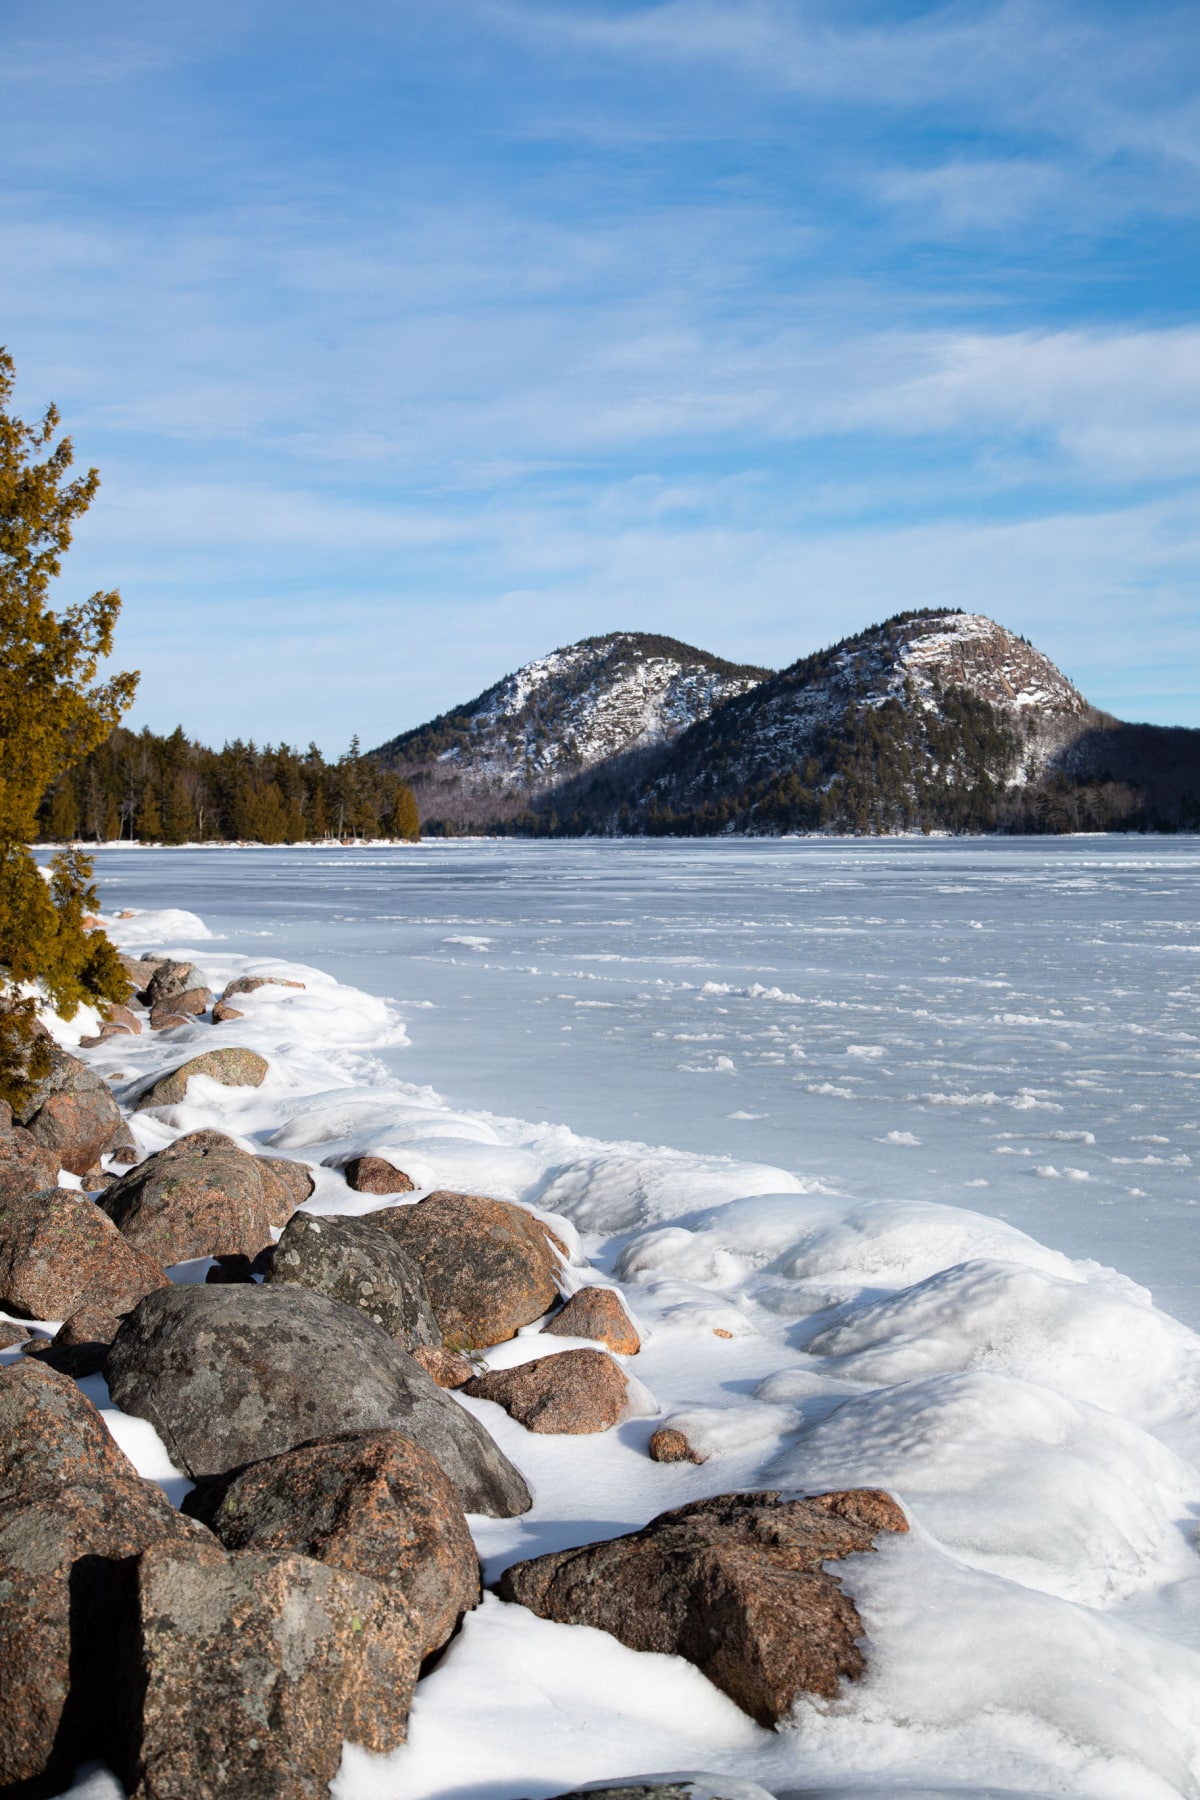 Jordan Pond in Acadia National Park frozen over in winter. 